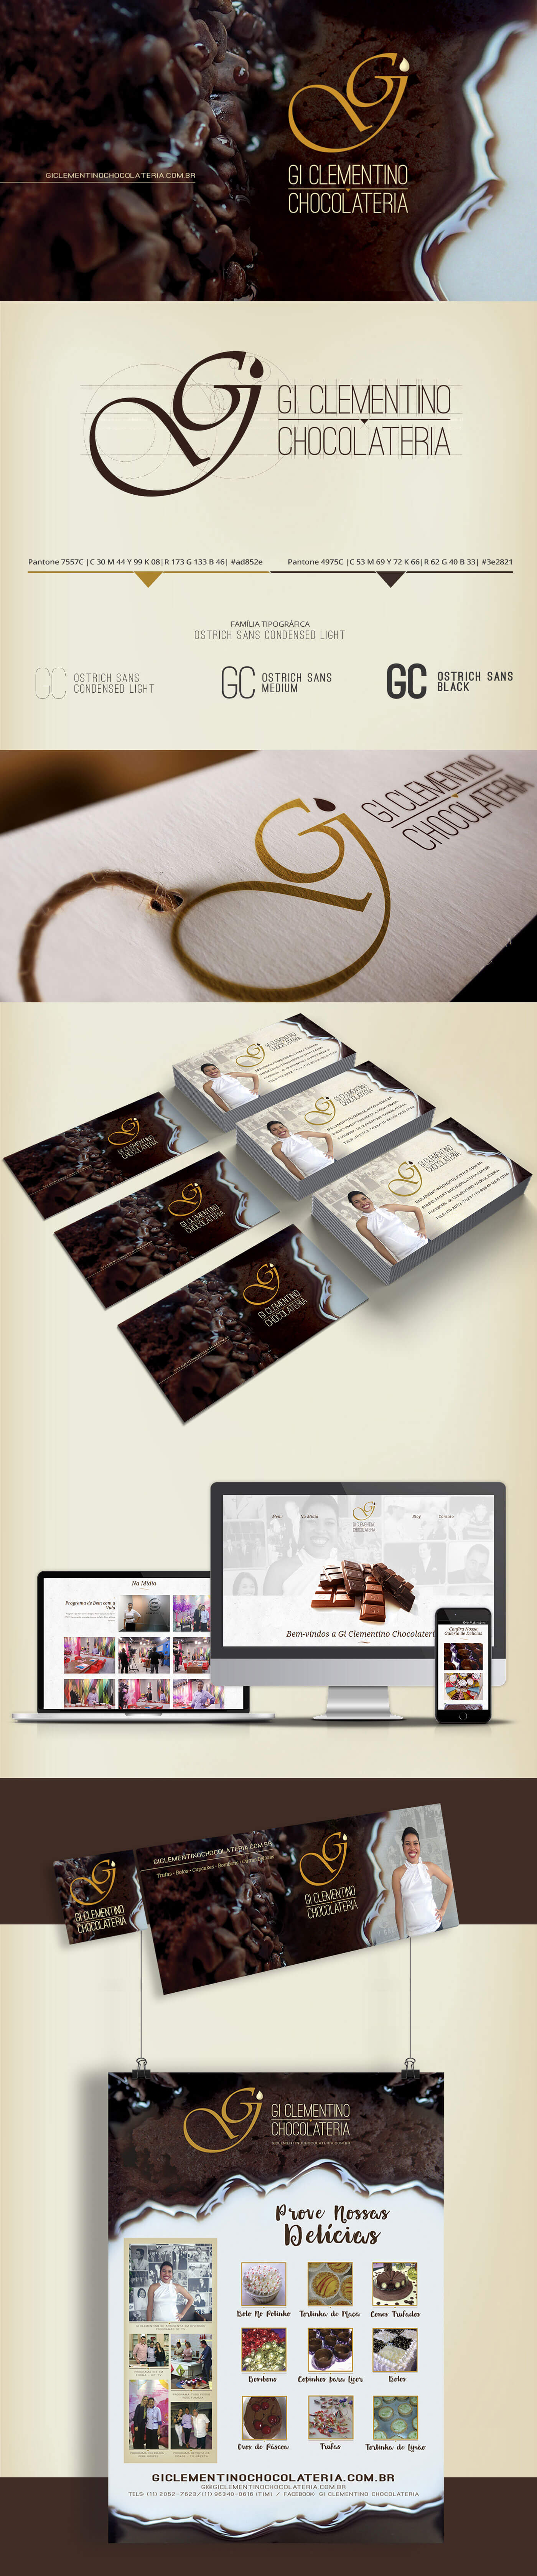 Imagem do processo e conceito criativo do Projeto de identidade visual da cliente Gi Clementino Chocolateria